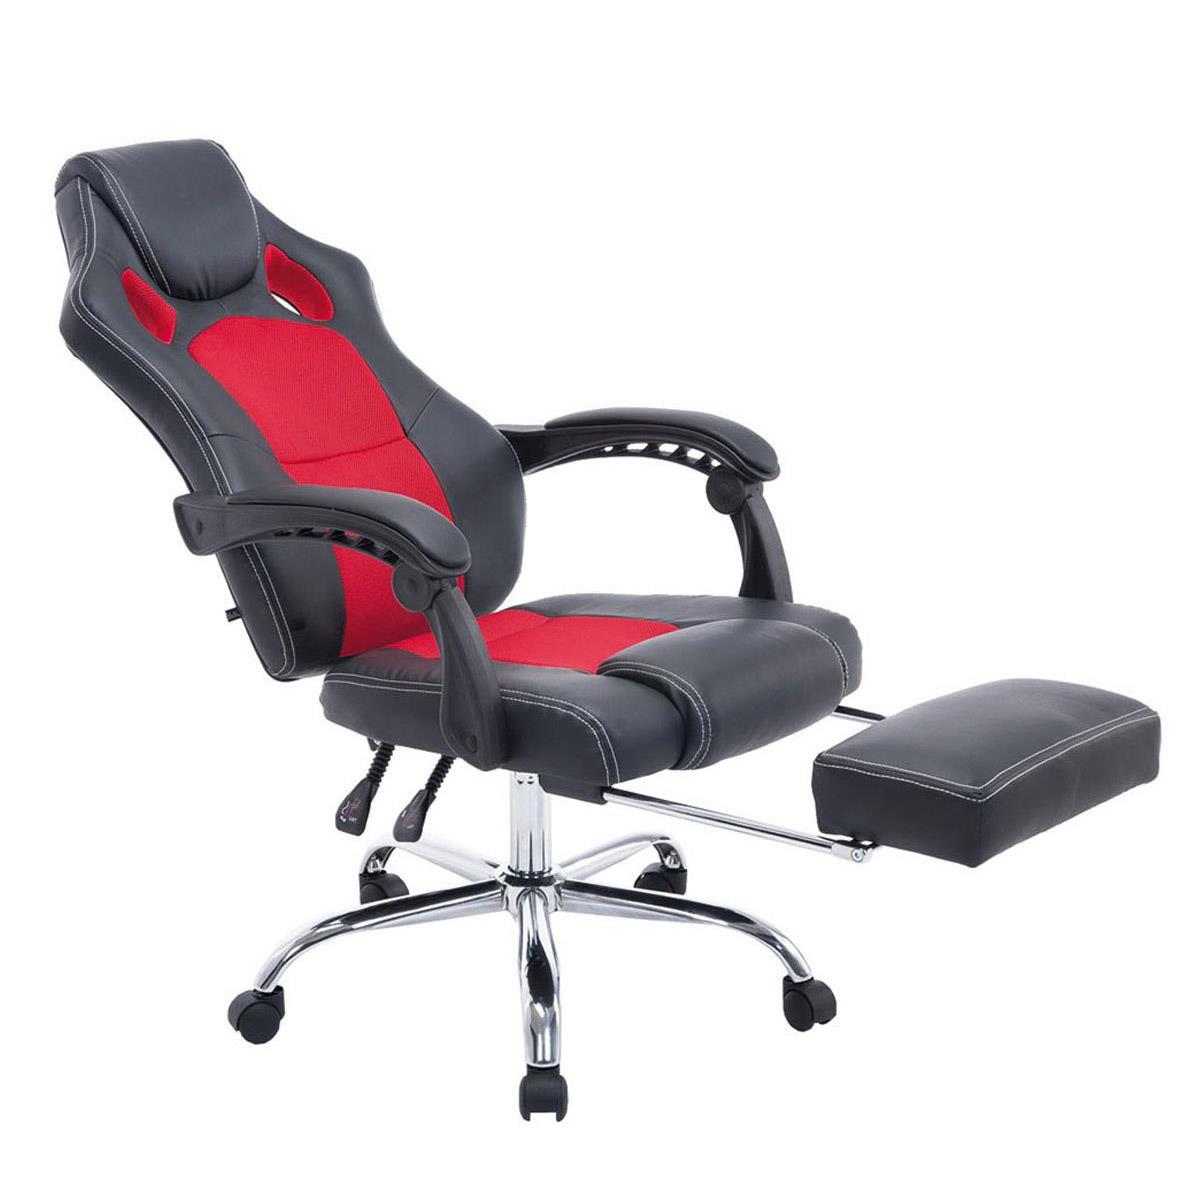 Chaise Gamer SPRINT, avec Repose-pieds Extensible, en Cuir noir et Maille Respirable, Rouge